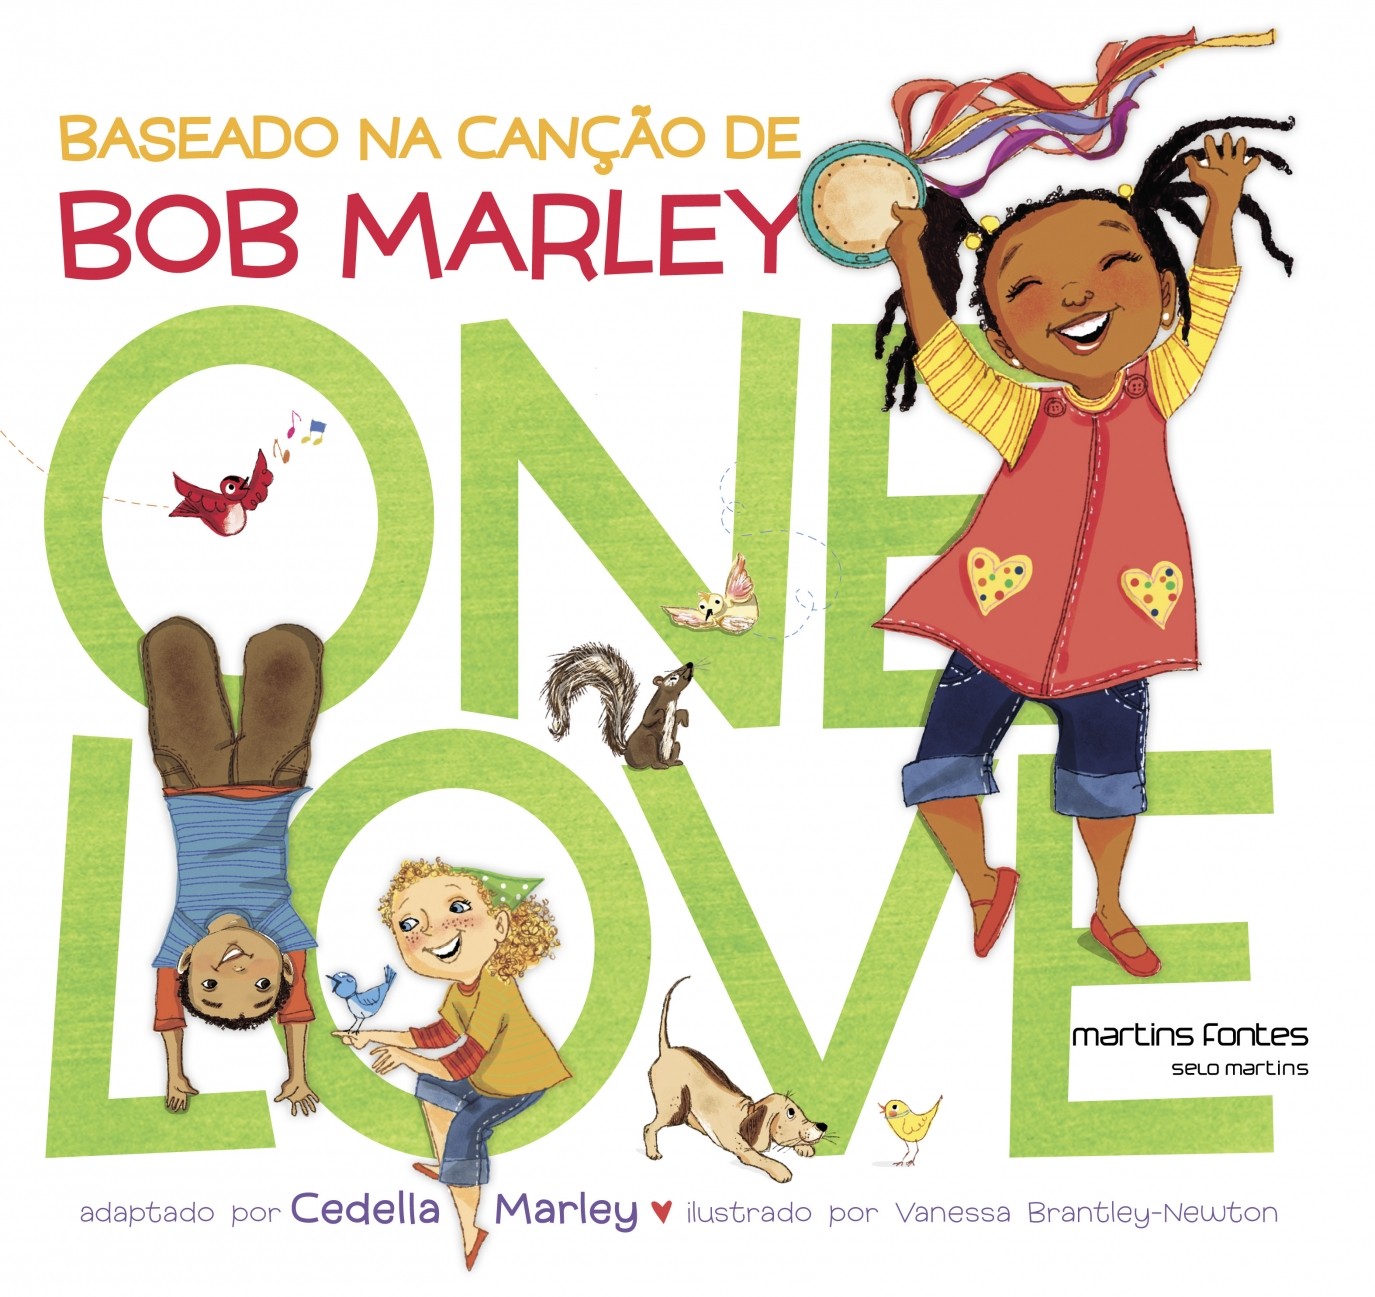 One love - Baseado na canção de Bob Marley